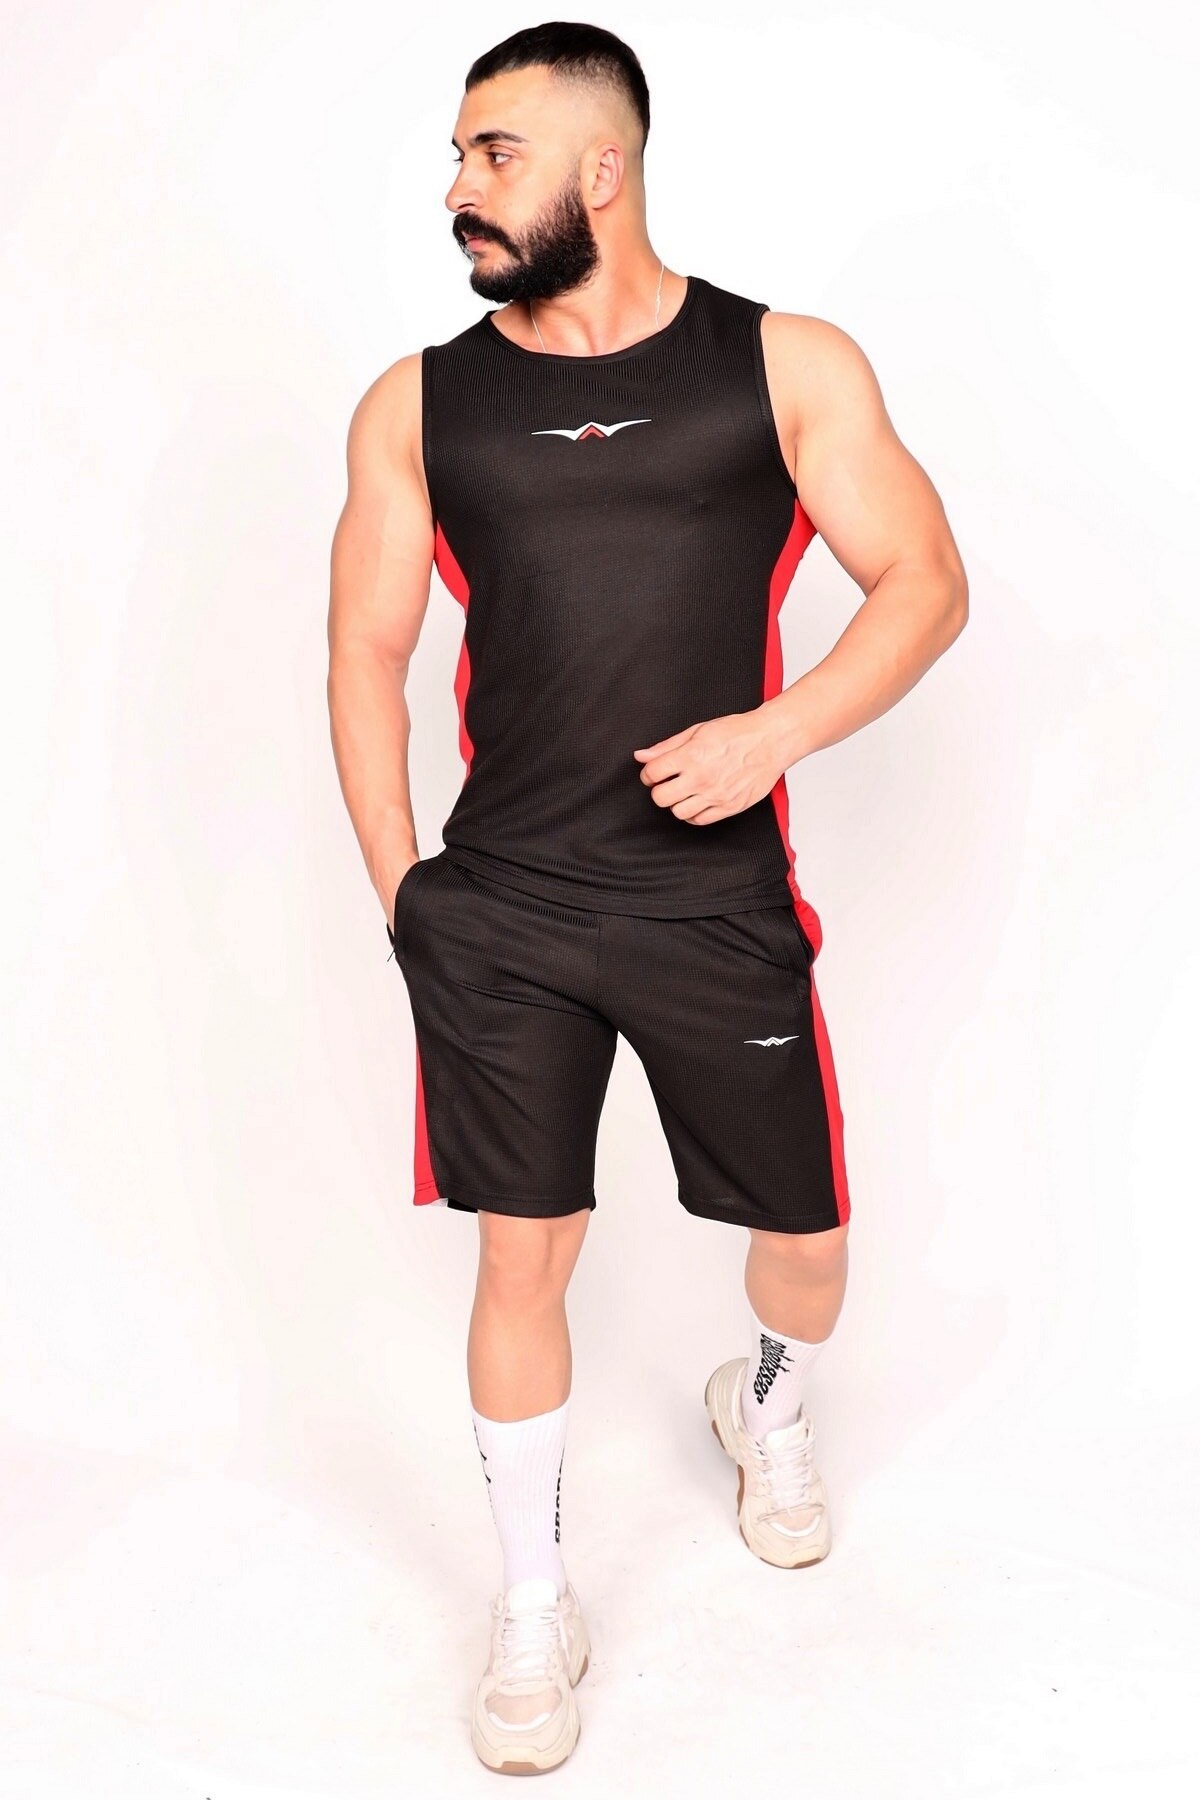 Sportshold åndbar shorts & undertrøje sort